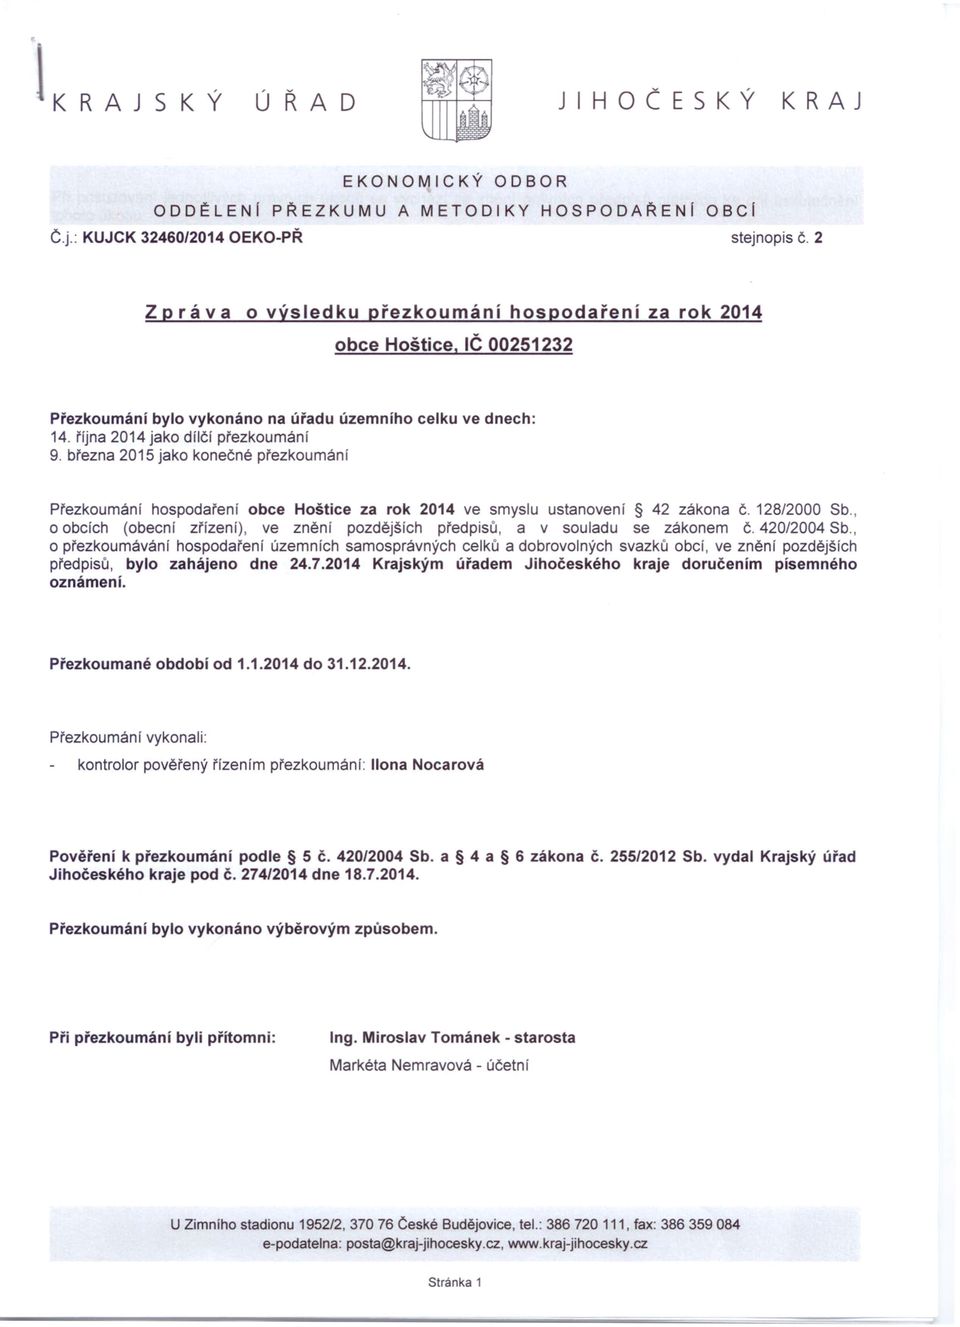 března 2015 jako konečné přezkoumání č. Přezkournání hospodaření obce Hoštice za rok 2014 ve smyslu ustanovení 42 zákona 128/2000 Sb.